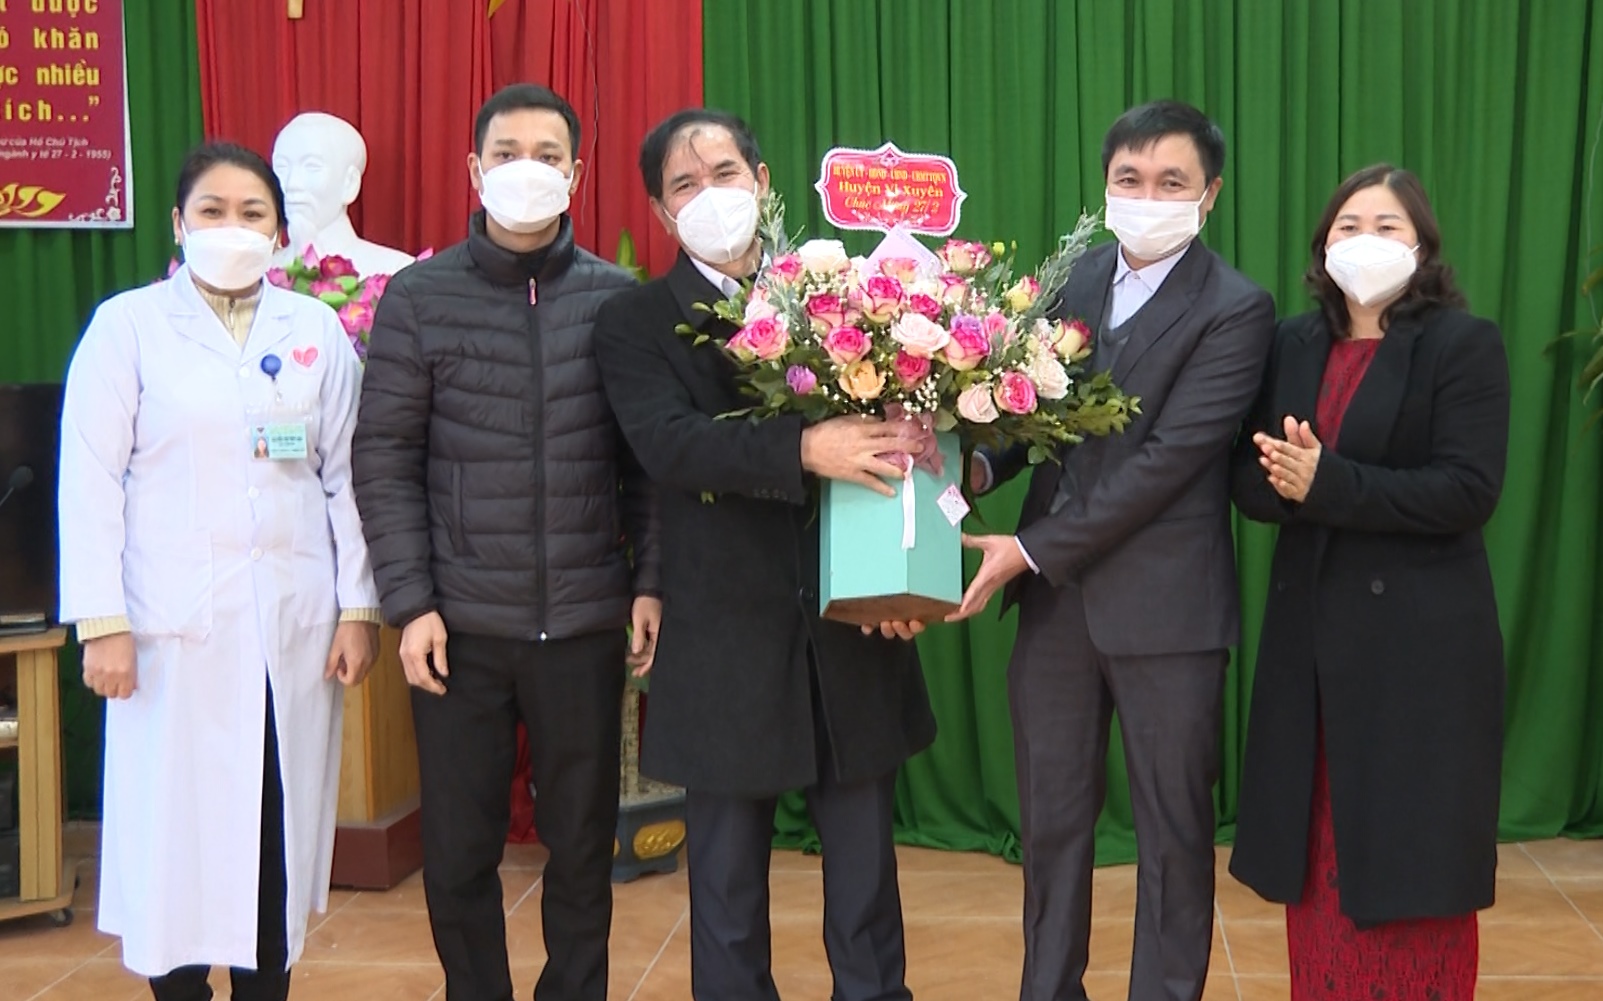 Lãnh đạo huyện Vị Xuyên tặng hoa chúc mừng ngày Thầy thuốc Việt Nam.